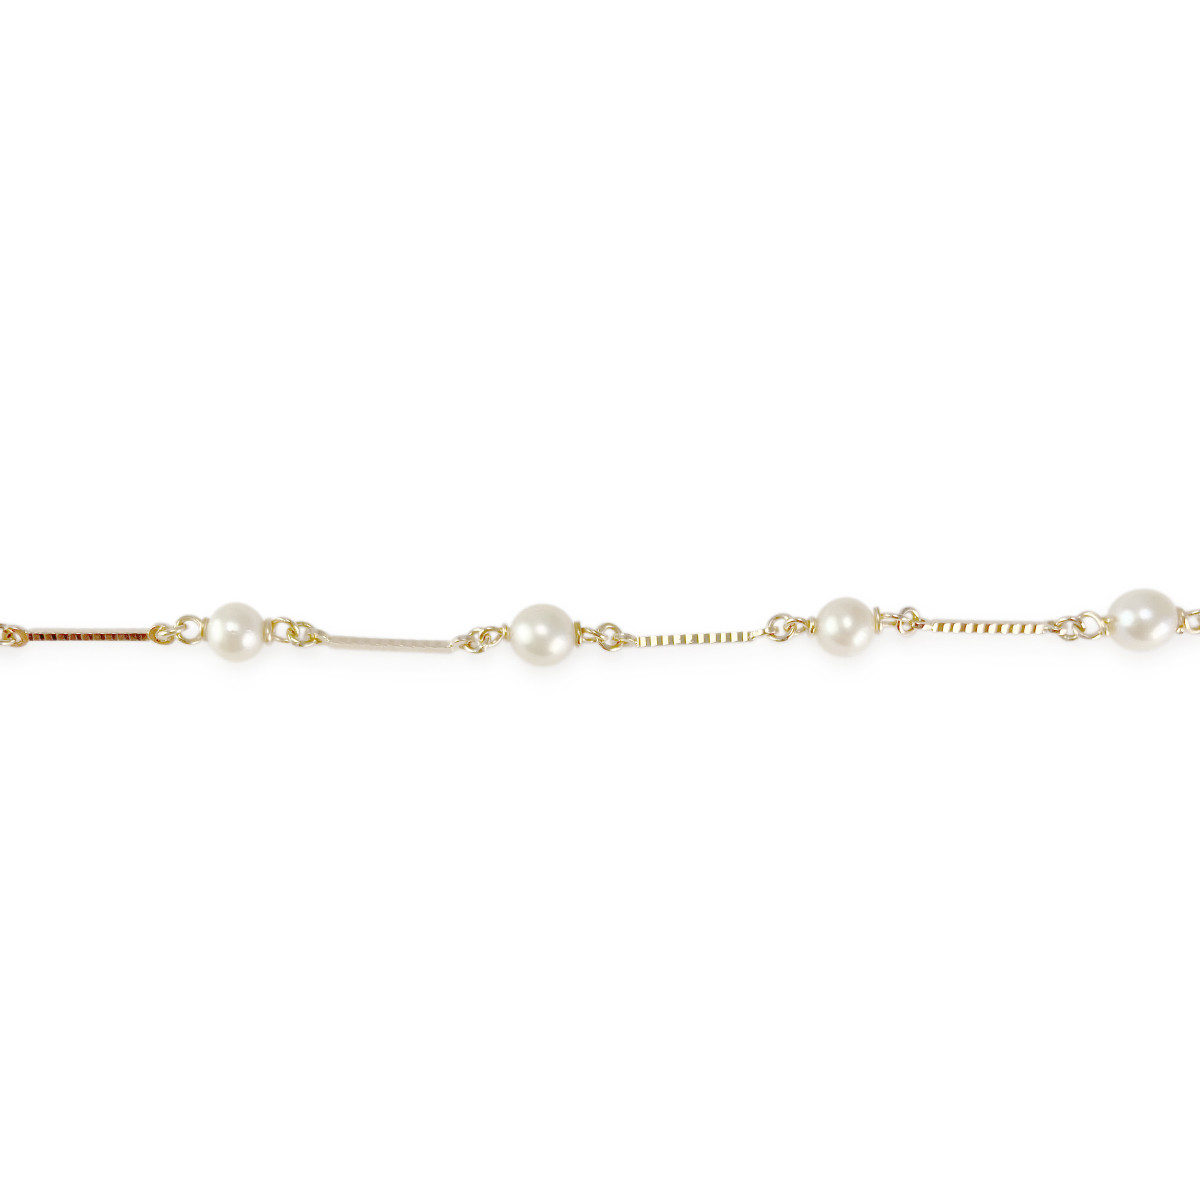 Collier d'occasion or 750 jaune perles de culture 52 cm - vue 3